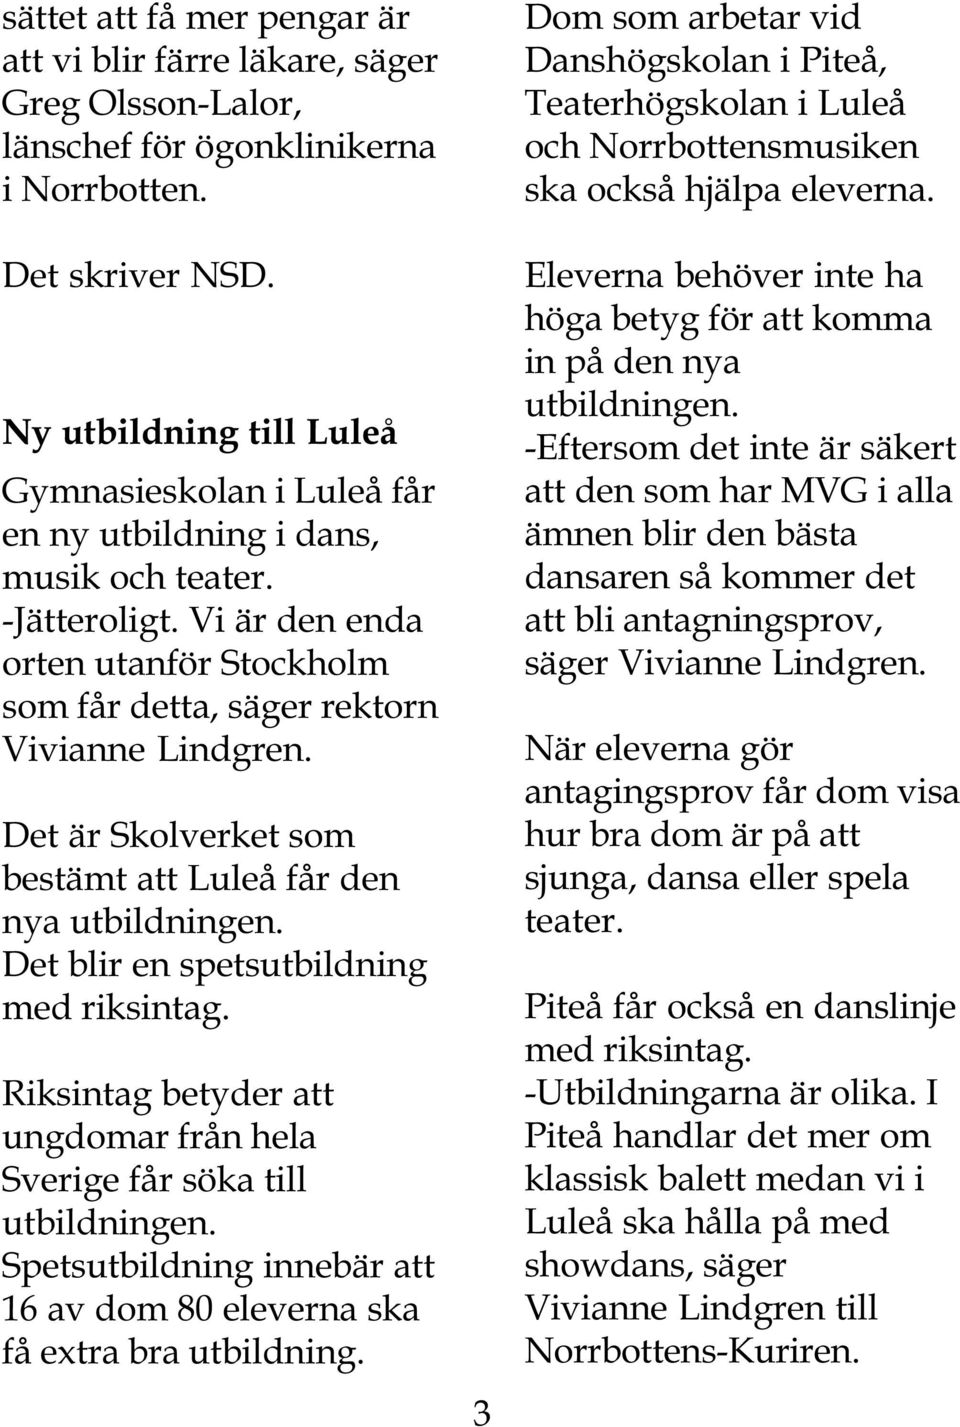 Det är Skolverket som bestämt att Luleå får den nya utbildningen. Det blir en spetsutbildning med riksintag. Riksintag betyder att ungdomar från hela Sverige får söka till utbildningen.